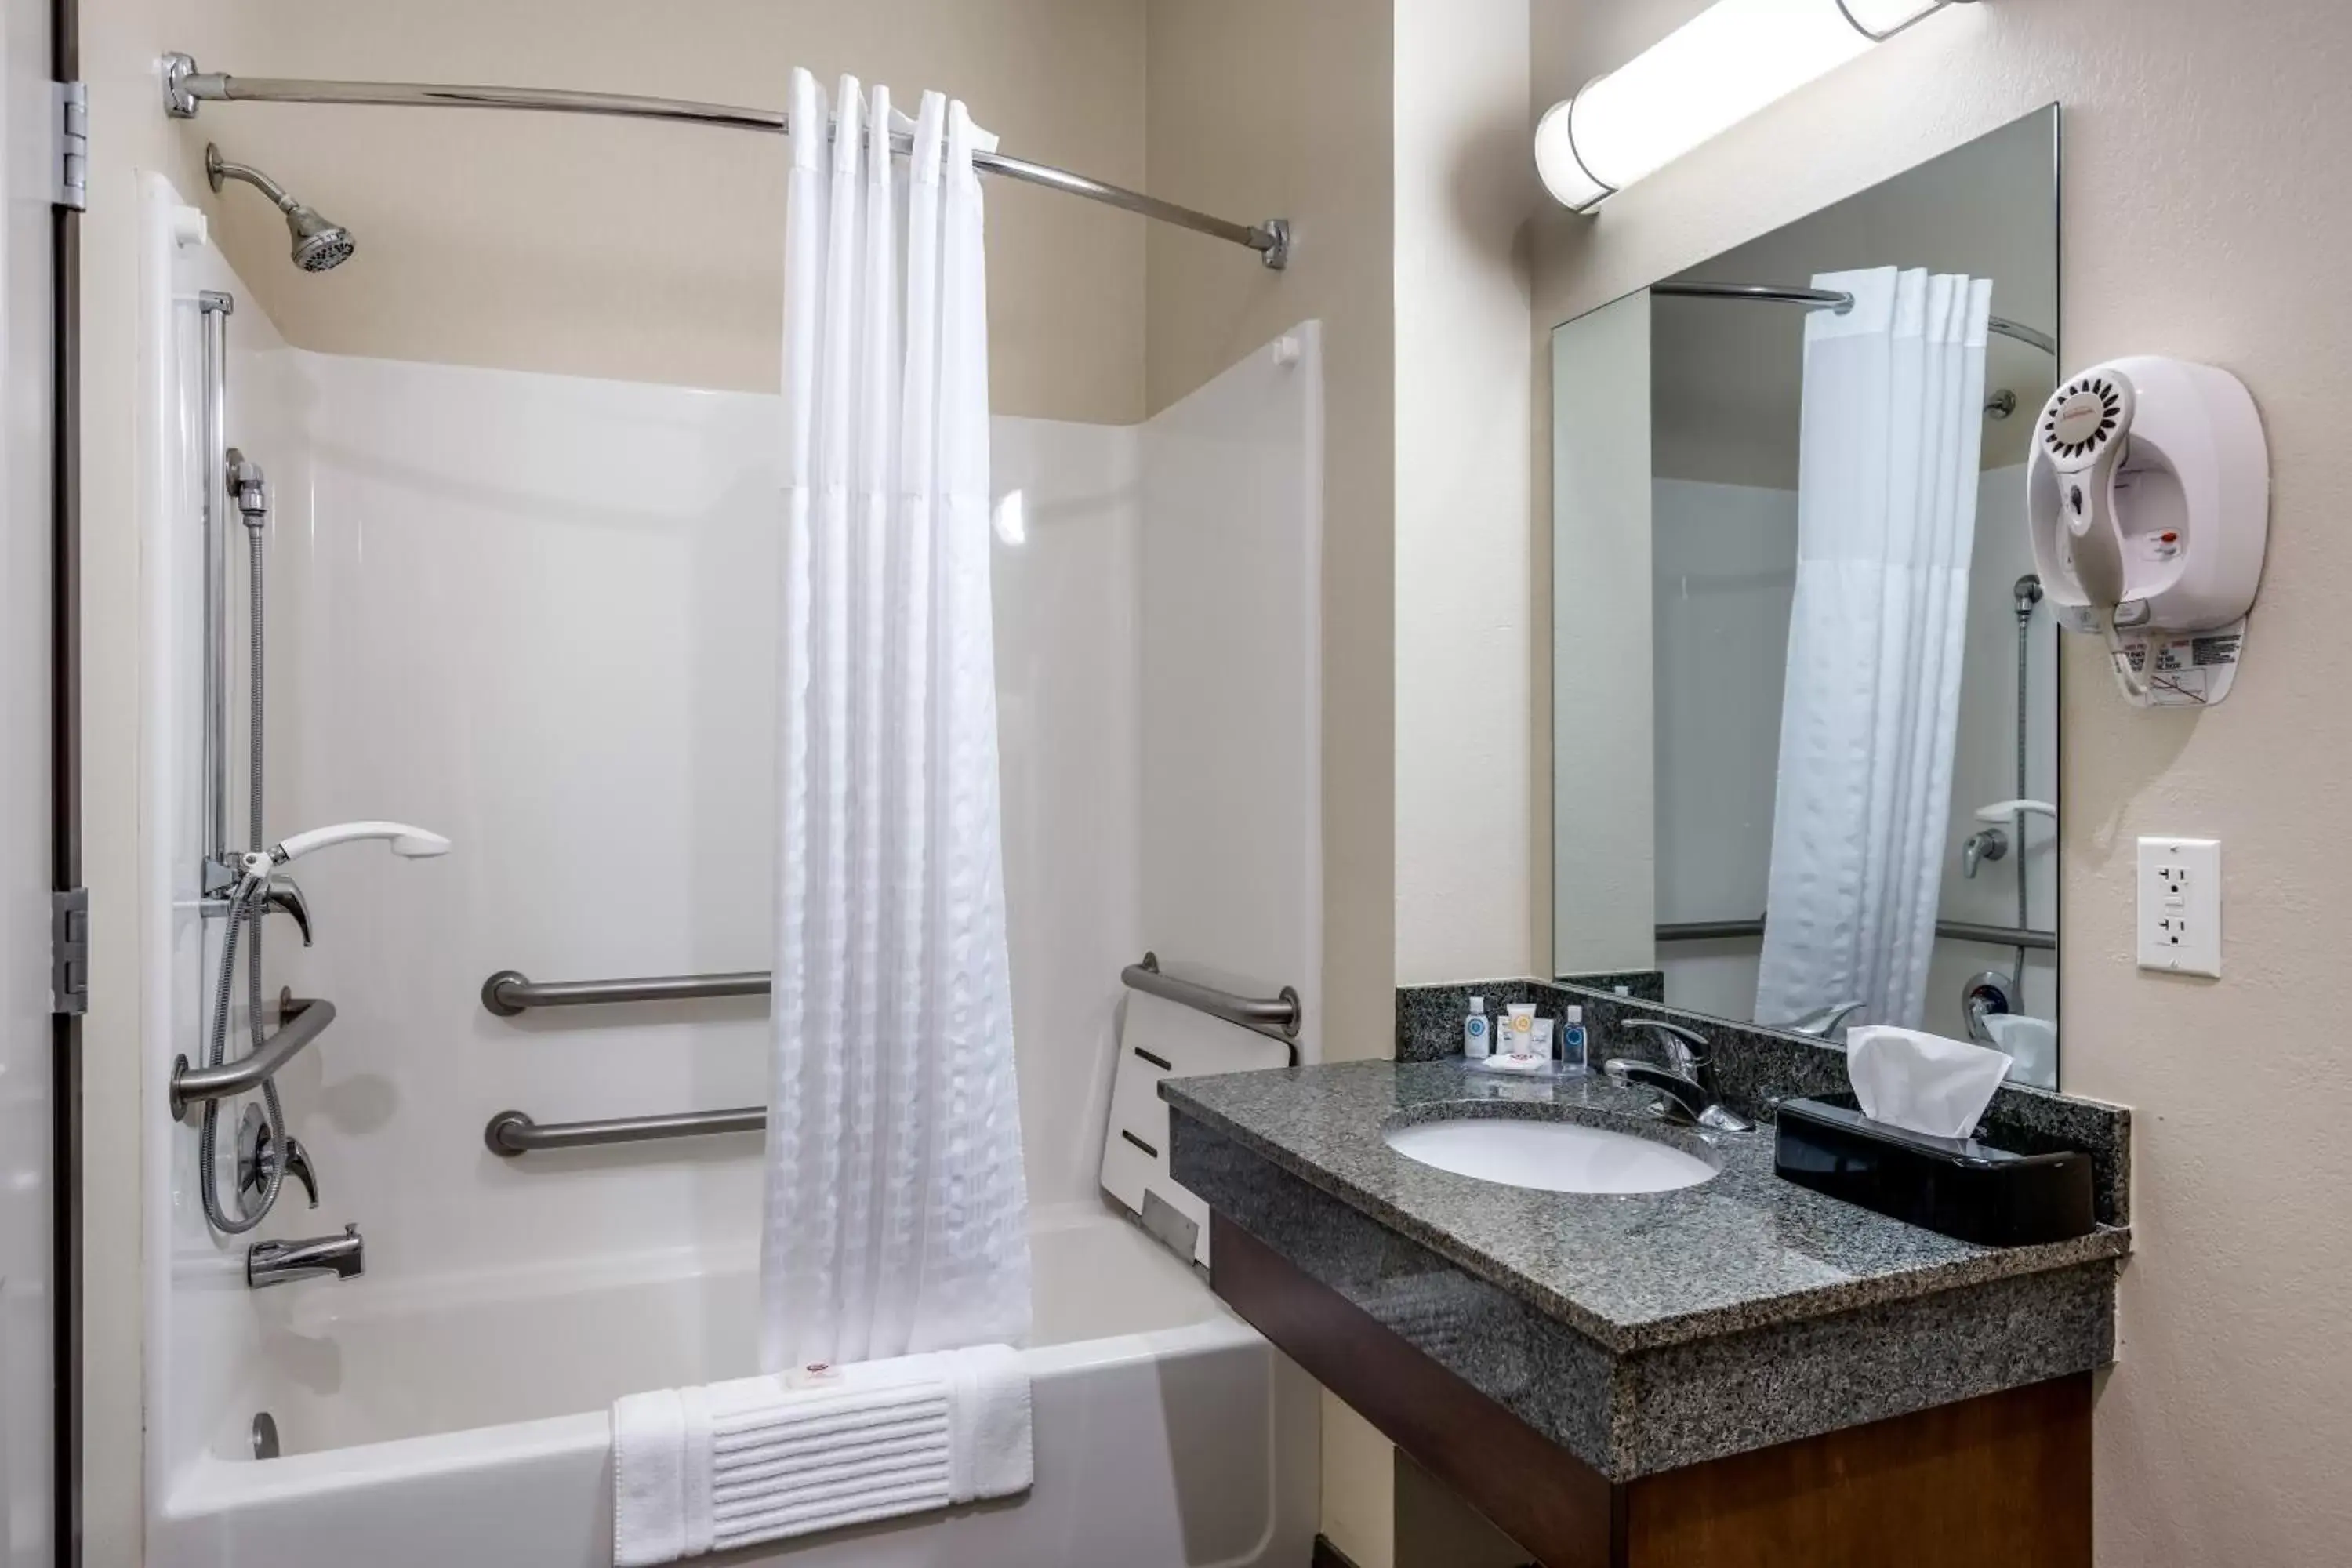 Bathroom in Comfort Inn Bonner Springs Kansas City